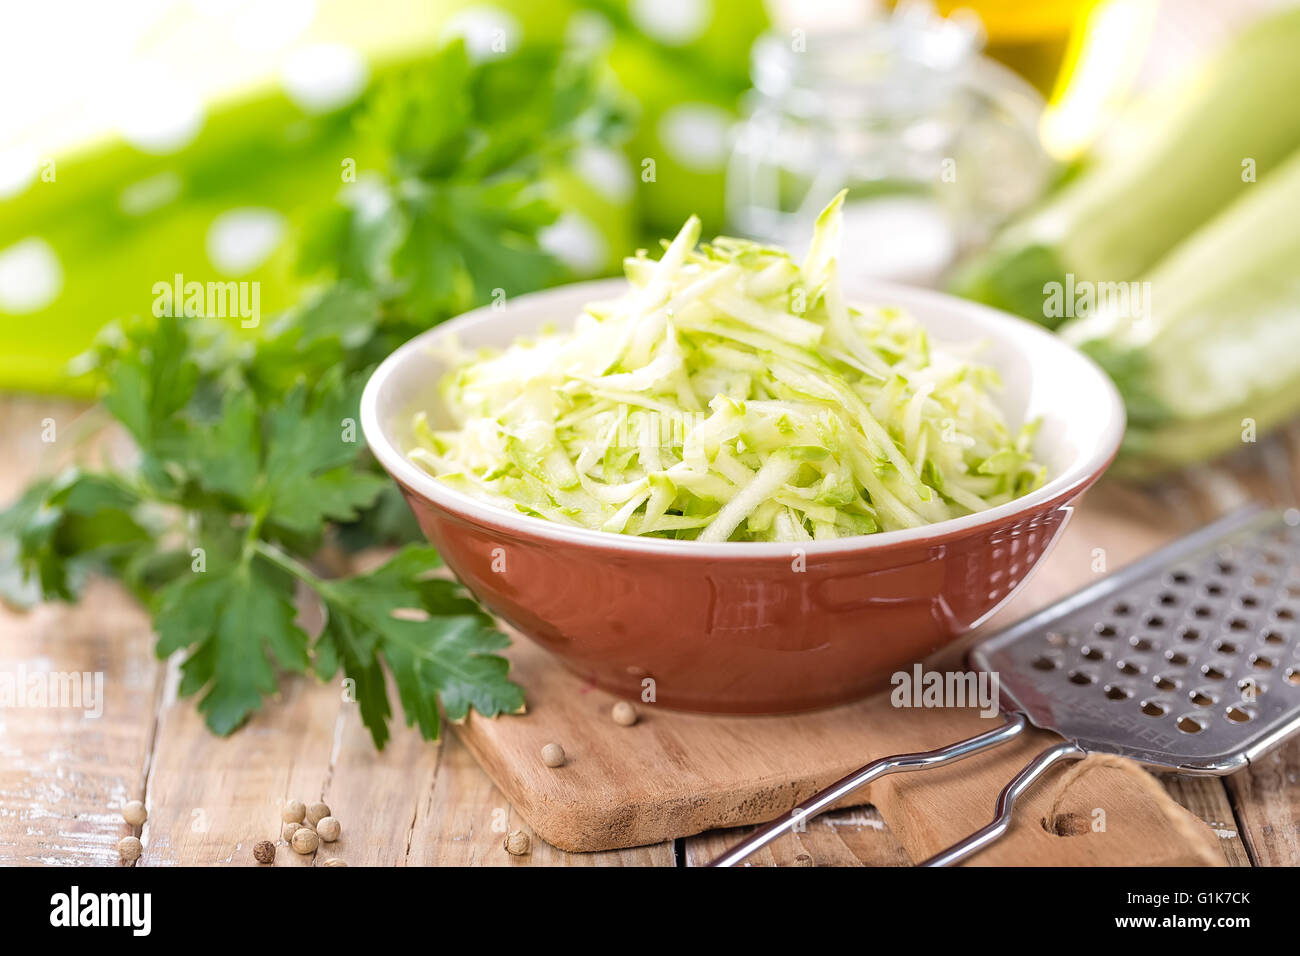 vegetable marrow Stock Photo